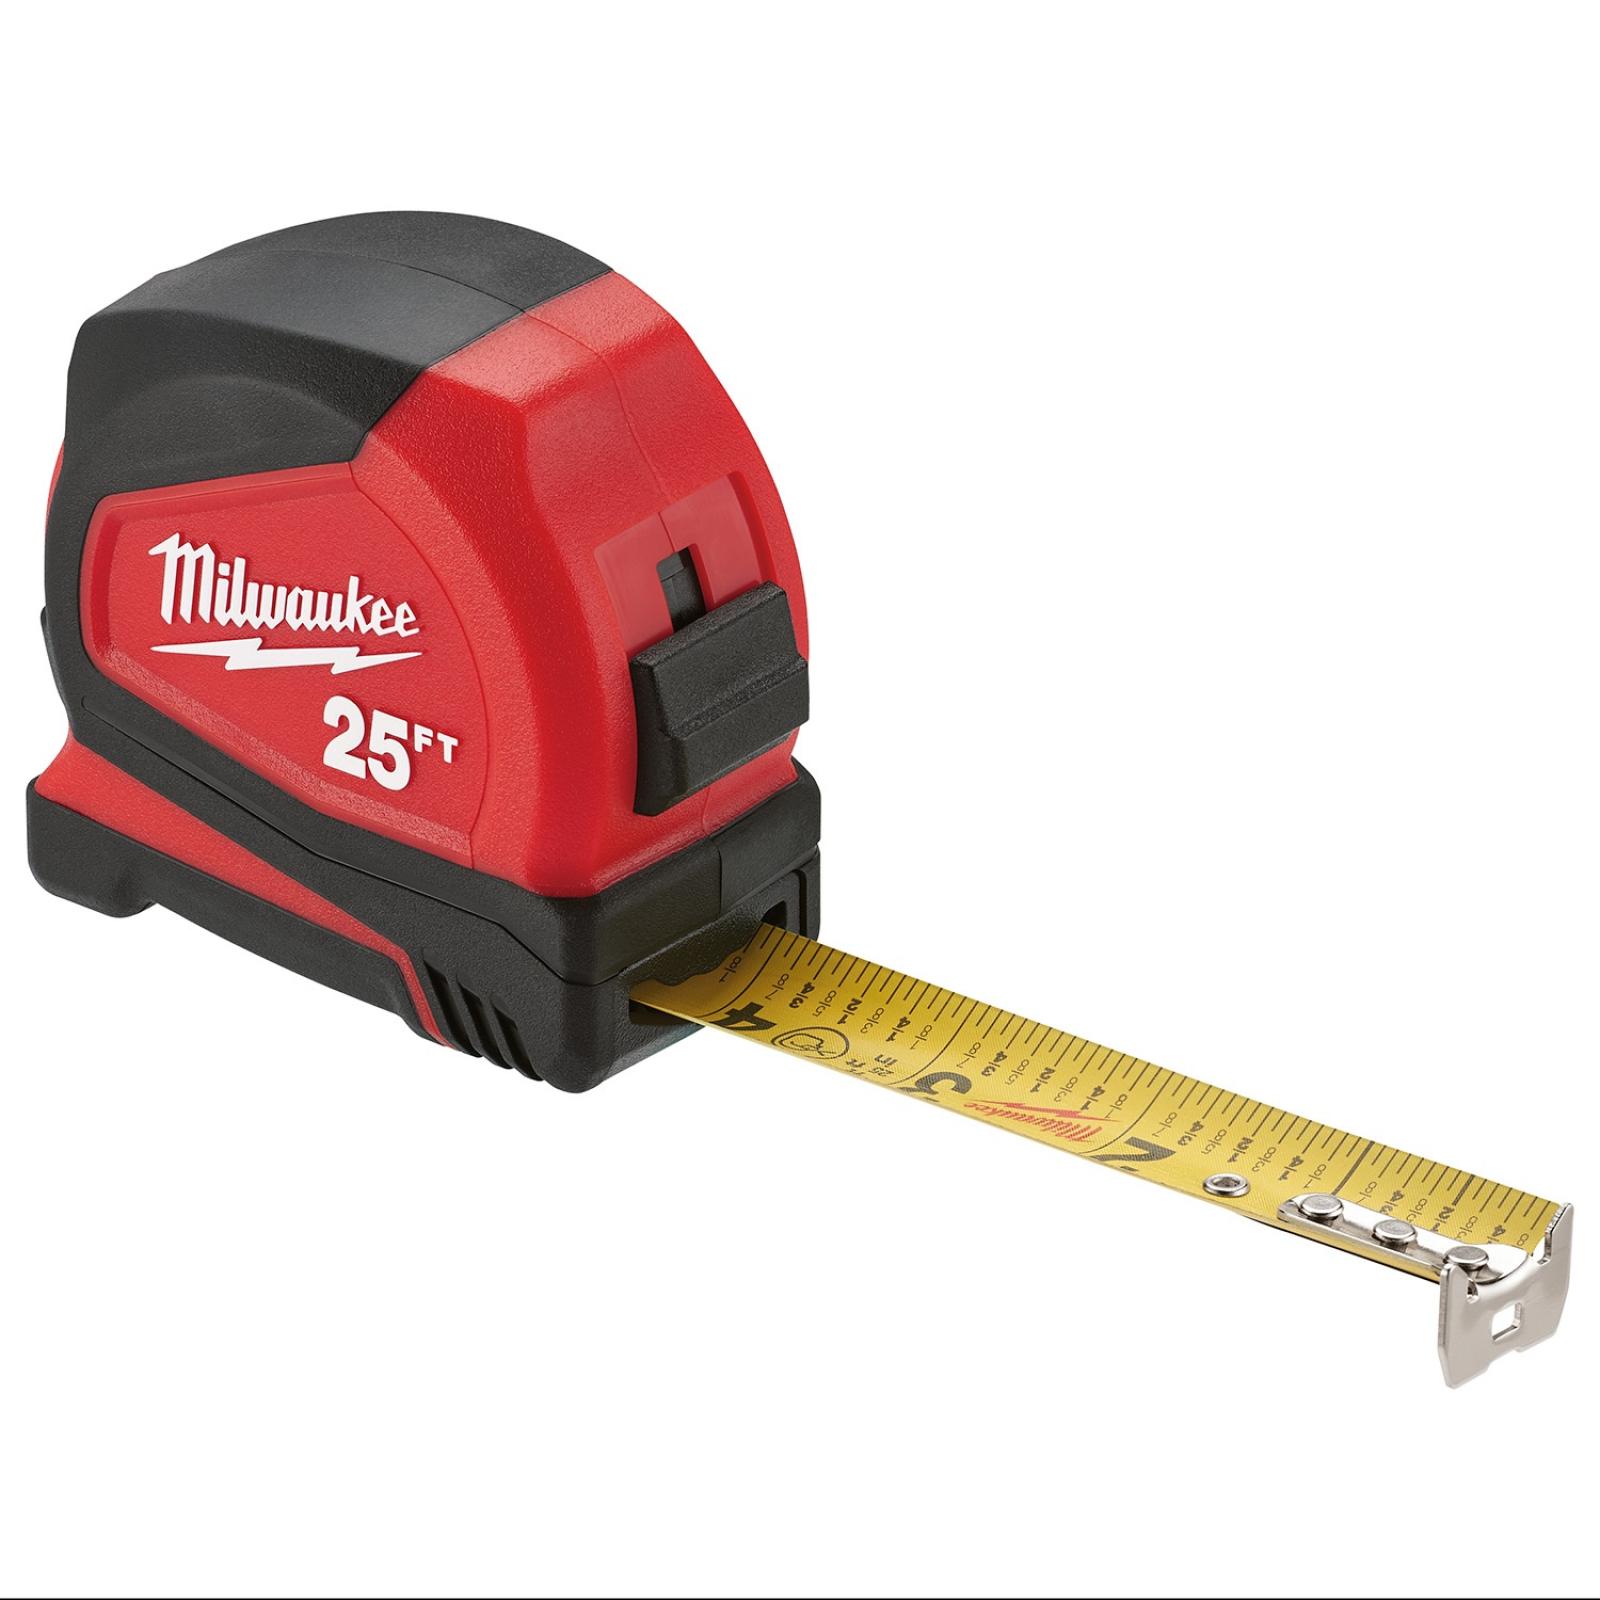 Milwaukee 25' Compact Tape Measure